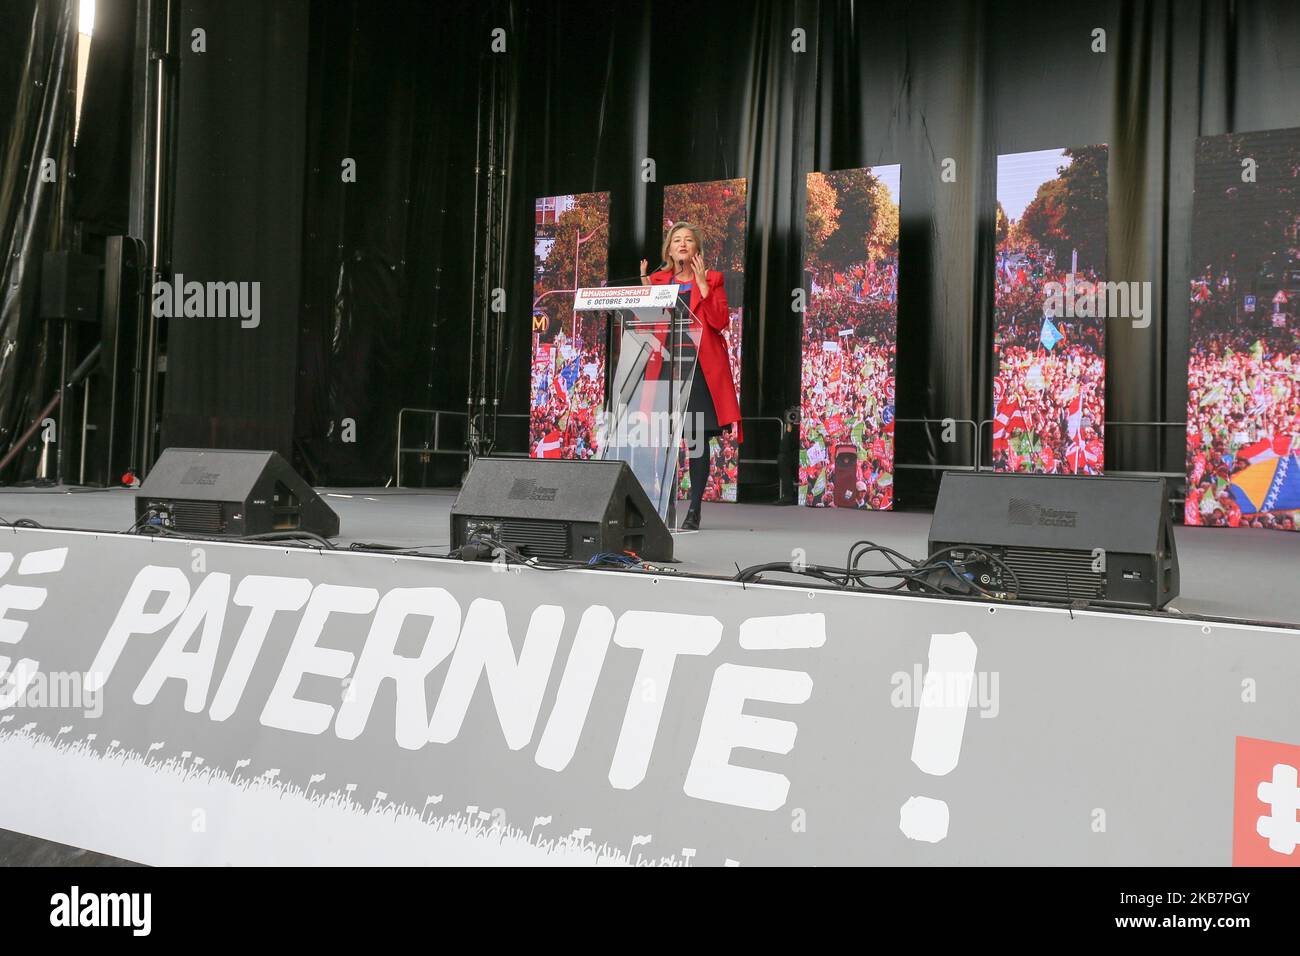 Presidente del movimento di matrimonio anti-gay 'la Manif pour Tous' (protesta per tutti) Ludovine de la Rochere parla nel corso di una protesta contro un piano governativo per permettere alle donne single e alle lesbiche di rimanere incinte con trattamenti per la fertilità, il 6 ottobre 2019 a Parigi. L'Assemblea nazionale francese del 26 settembre 2019 ha votato a favore di un disegno di legge sulla bioetica che dà a tutte le donne l'accesso ai trattamenti per la fertilità, come la fecondazione in vitro, la procreazione medicalement assistee o la PMA nell'inseminazione francese e artificiale. Finora, solo le coppie eterosessuali hanno il diritto di usare procreat medicalmente assistito Foto Stock